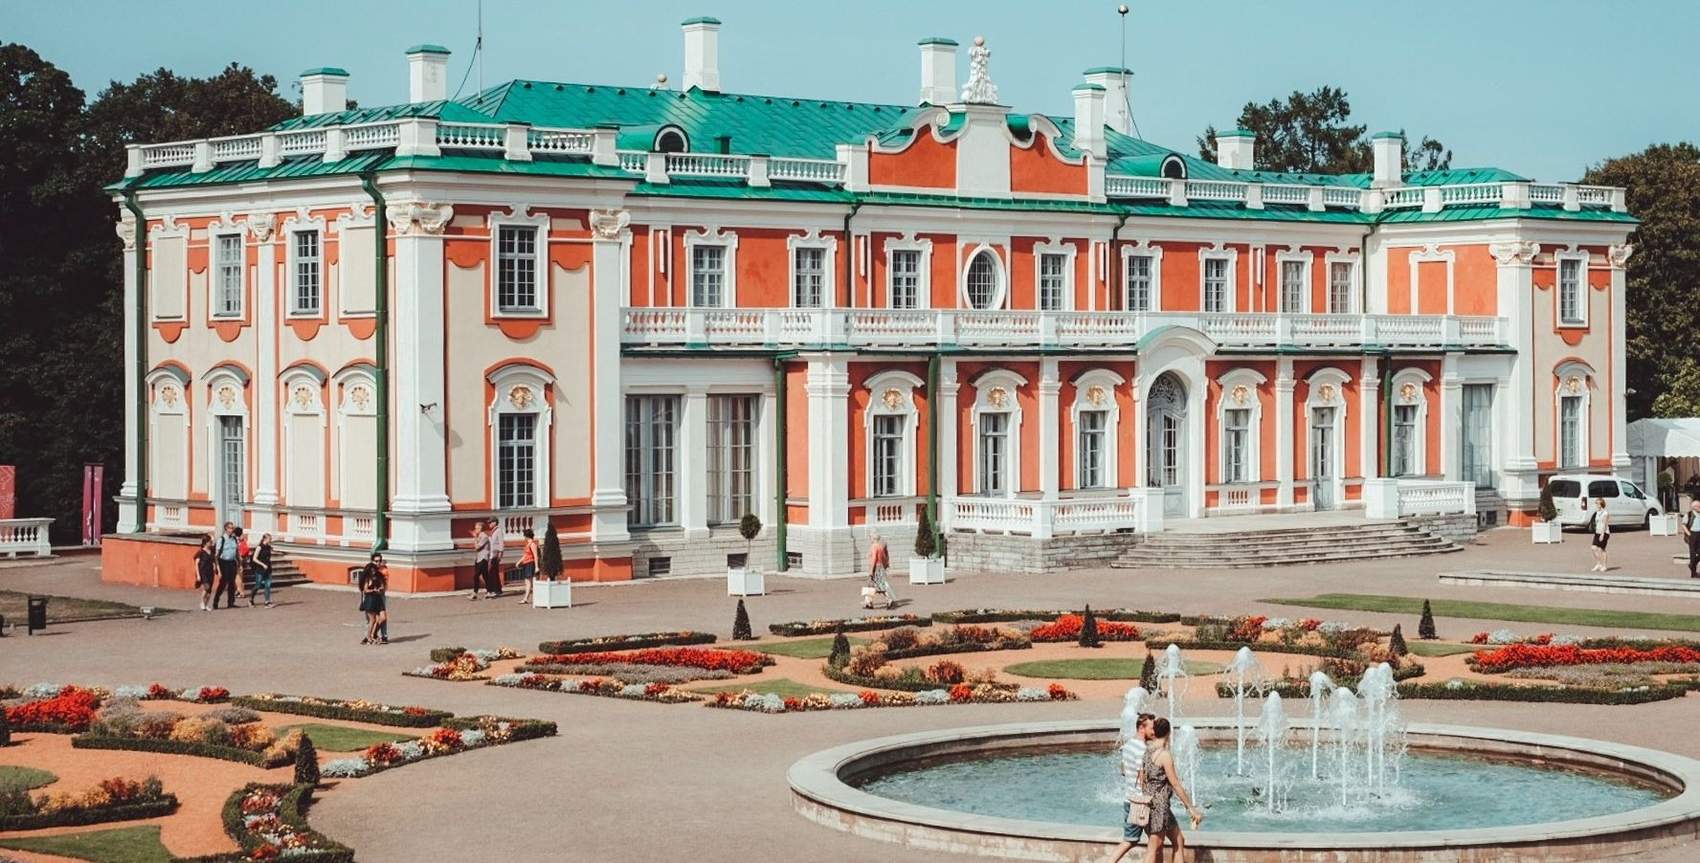 View of the Kadriorg Palace in Tallinn, Estonia Photo: Kadi-Liis Koppel